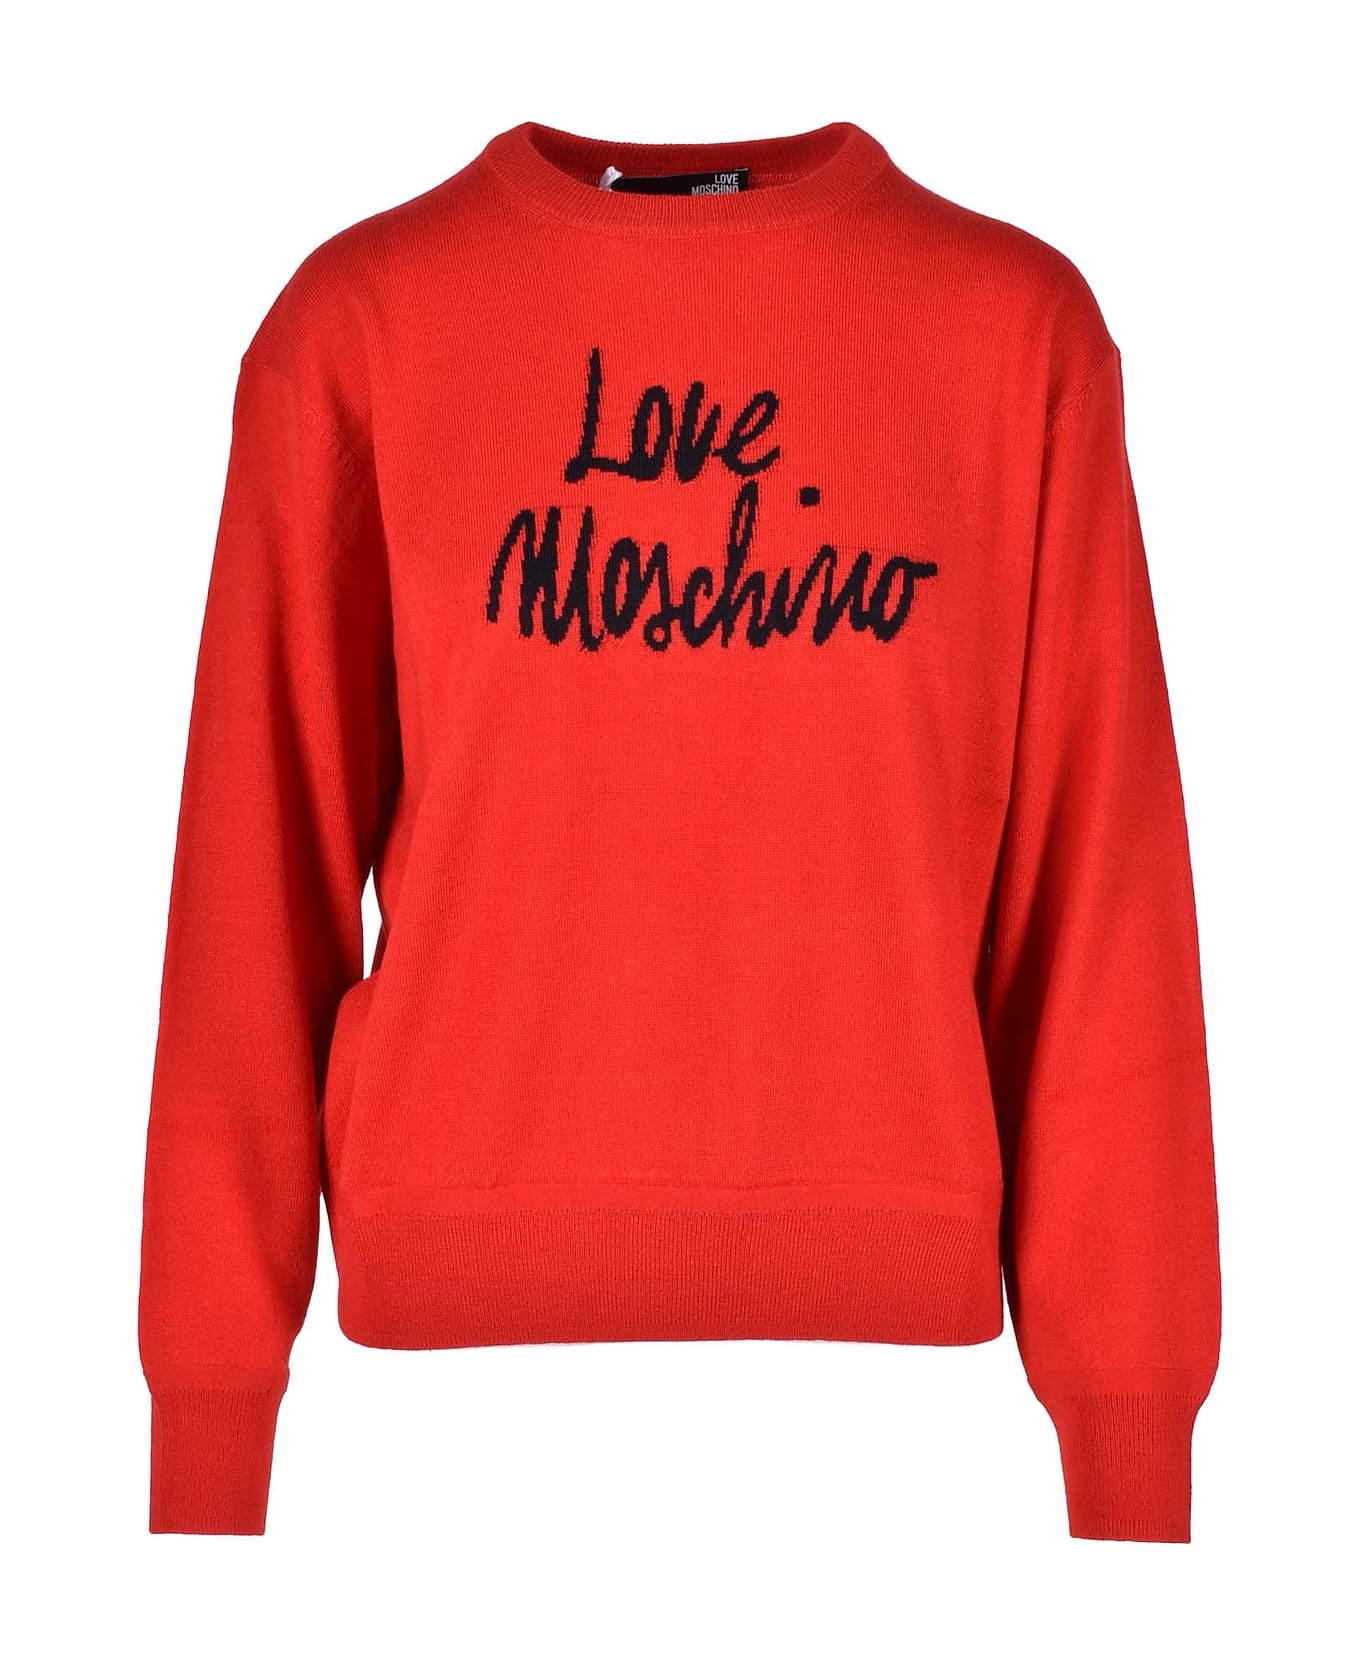 Love Moschino Women's Red Sweater - Red